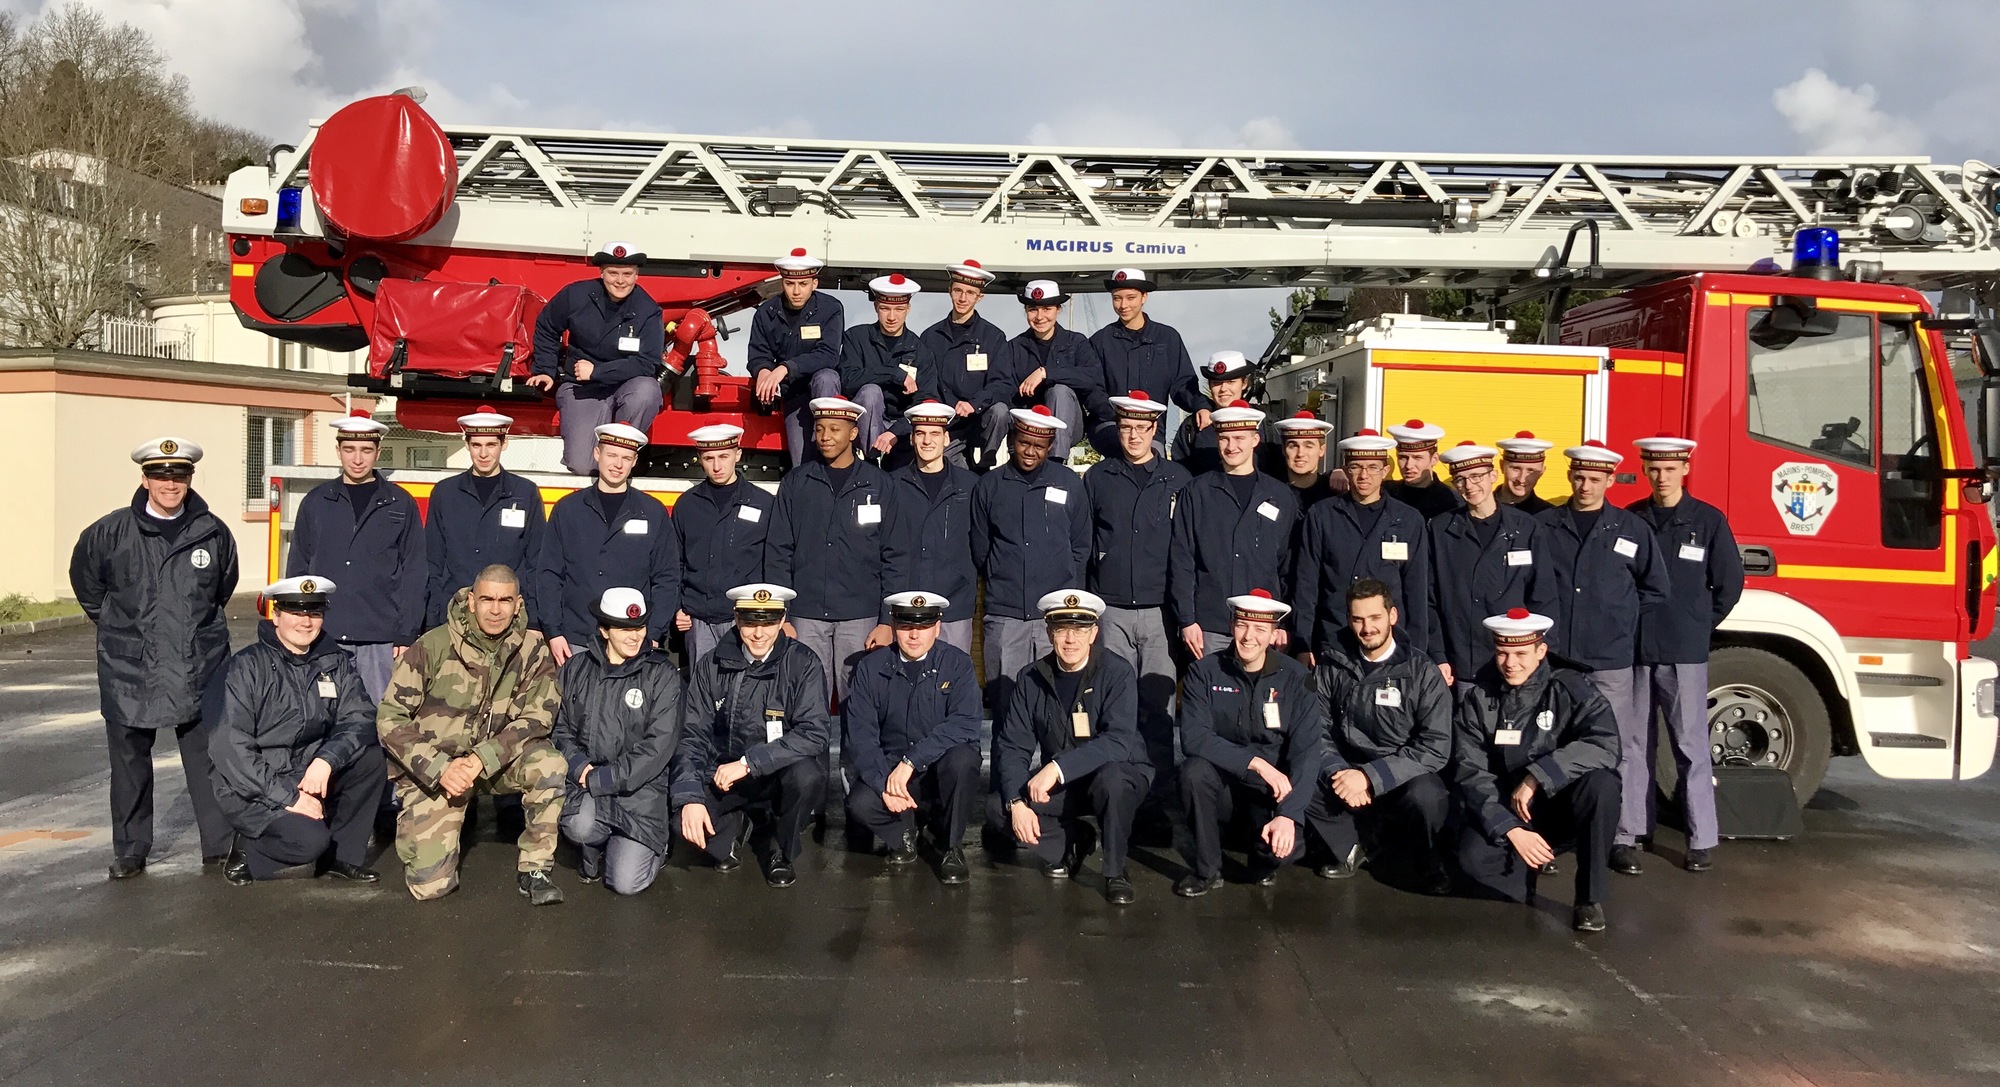 Les stagiaires de la PMM Richelieu devant un camion des marins-pompiers de Brest